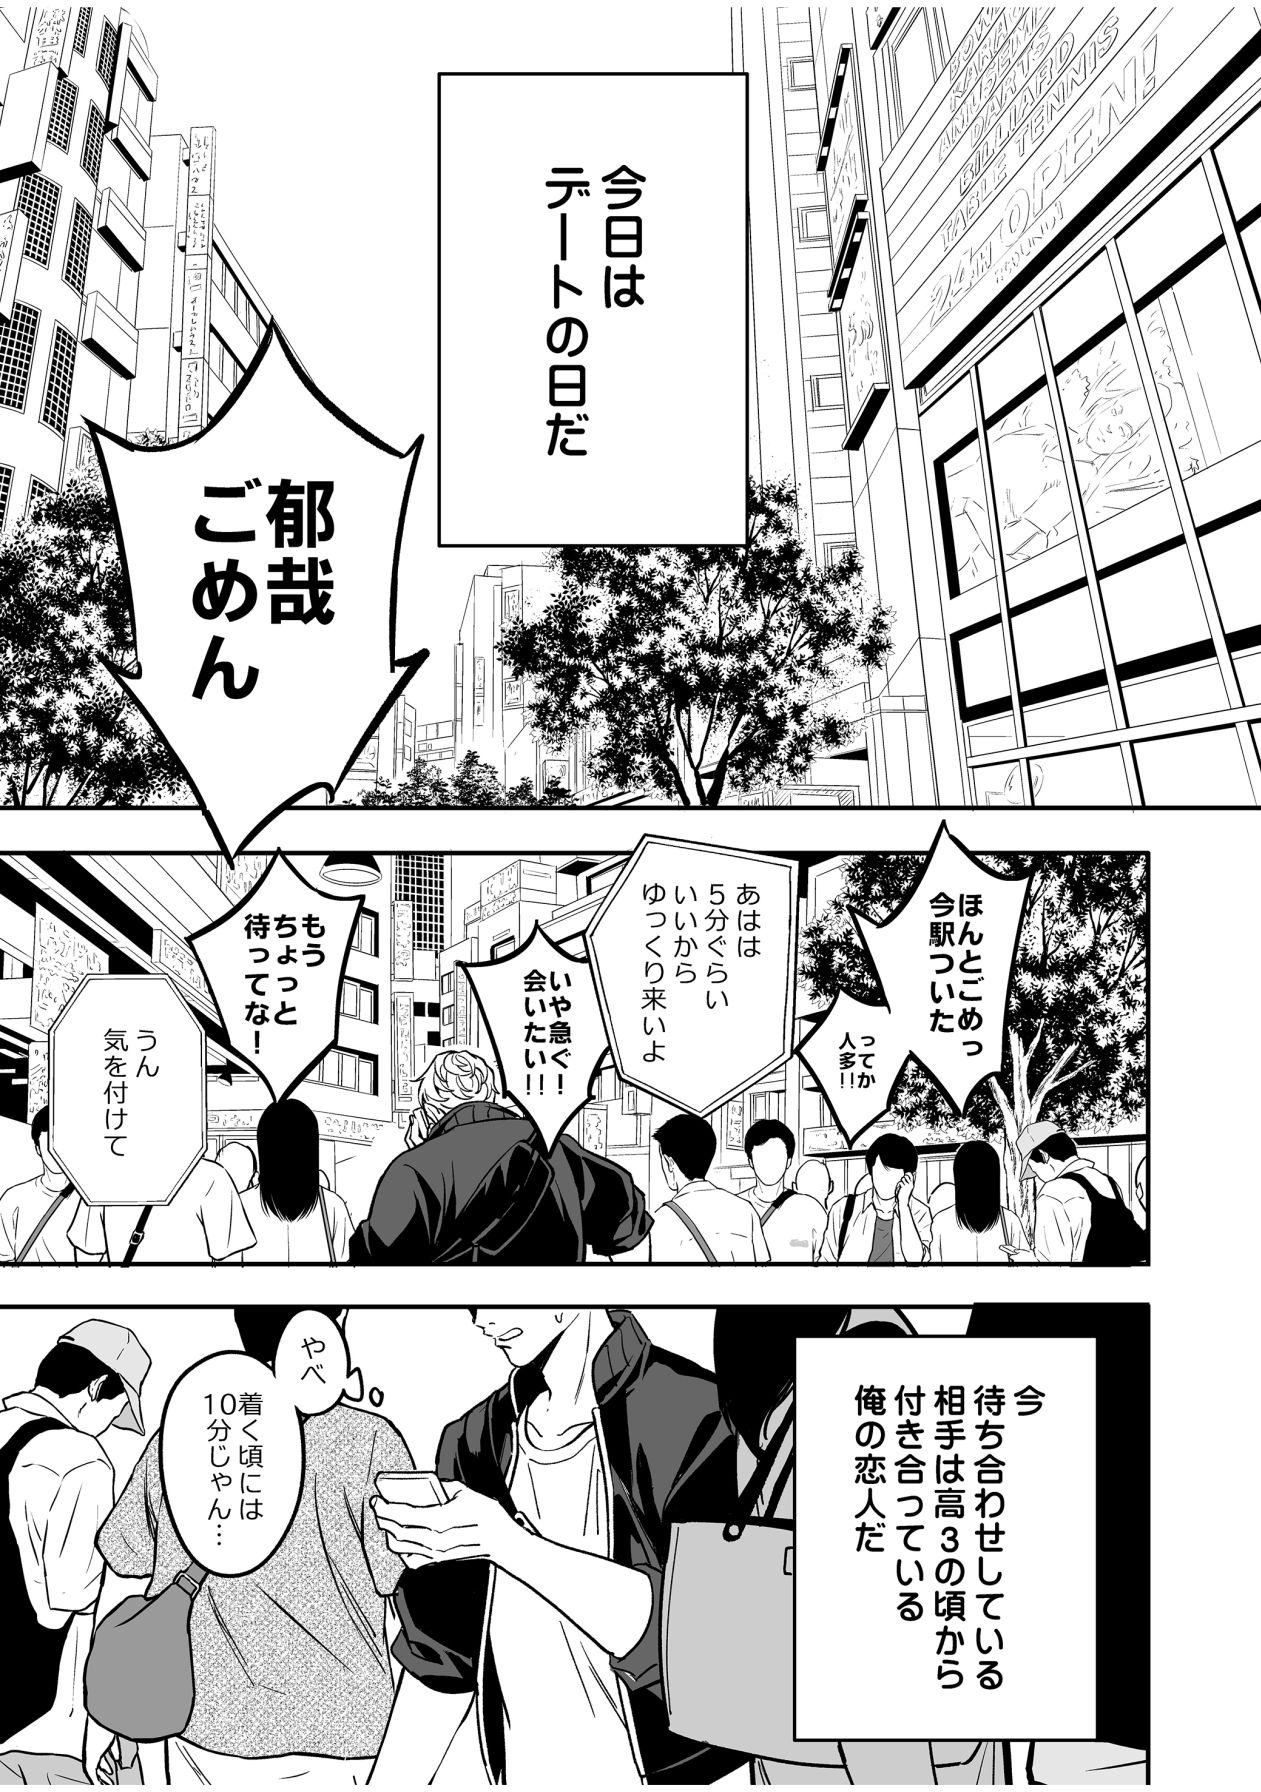 Nut Kō seinen kappuru wa kyūjitsu no dēto ga tanoshimi de shikatanai Gostoso - Page 4